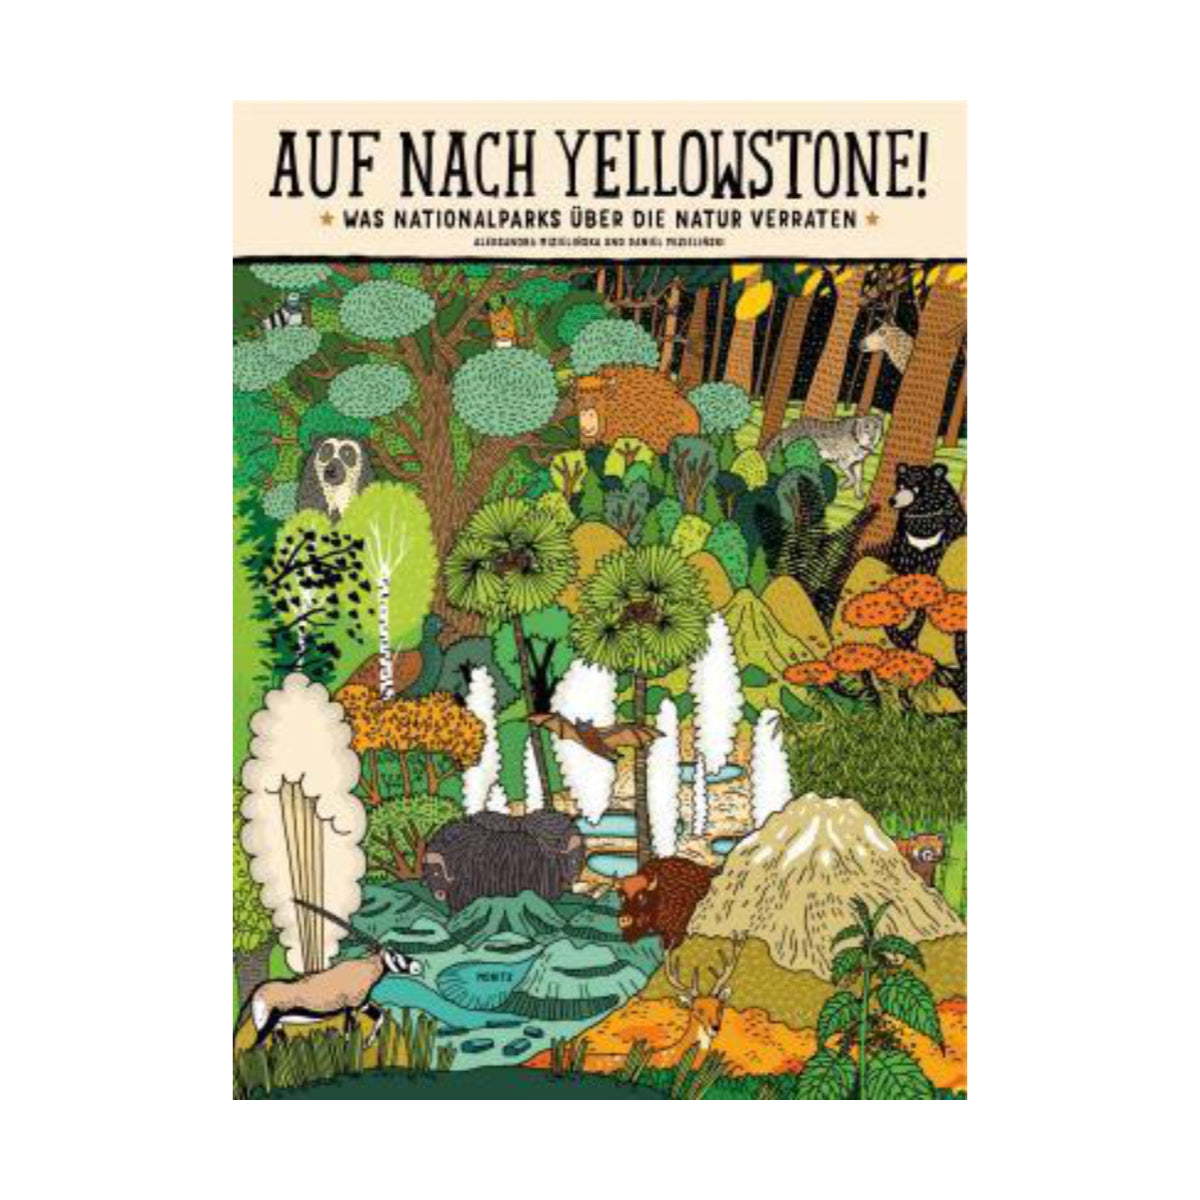 Moritz Verlag – Buch AUF NACH YELLOWSTONE! von Aleksandra Mizielinska - WILDHOOD store